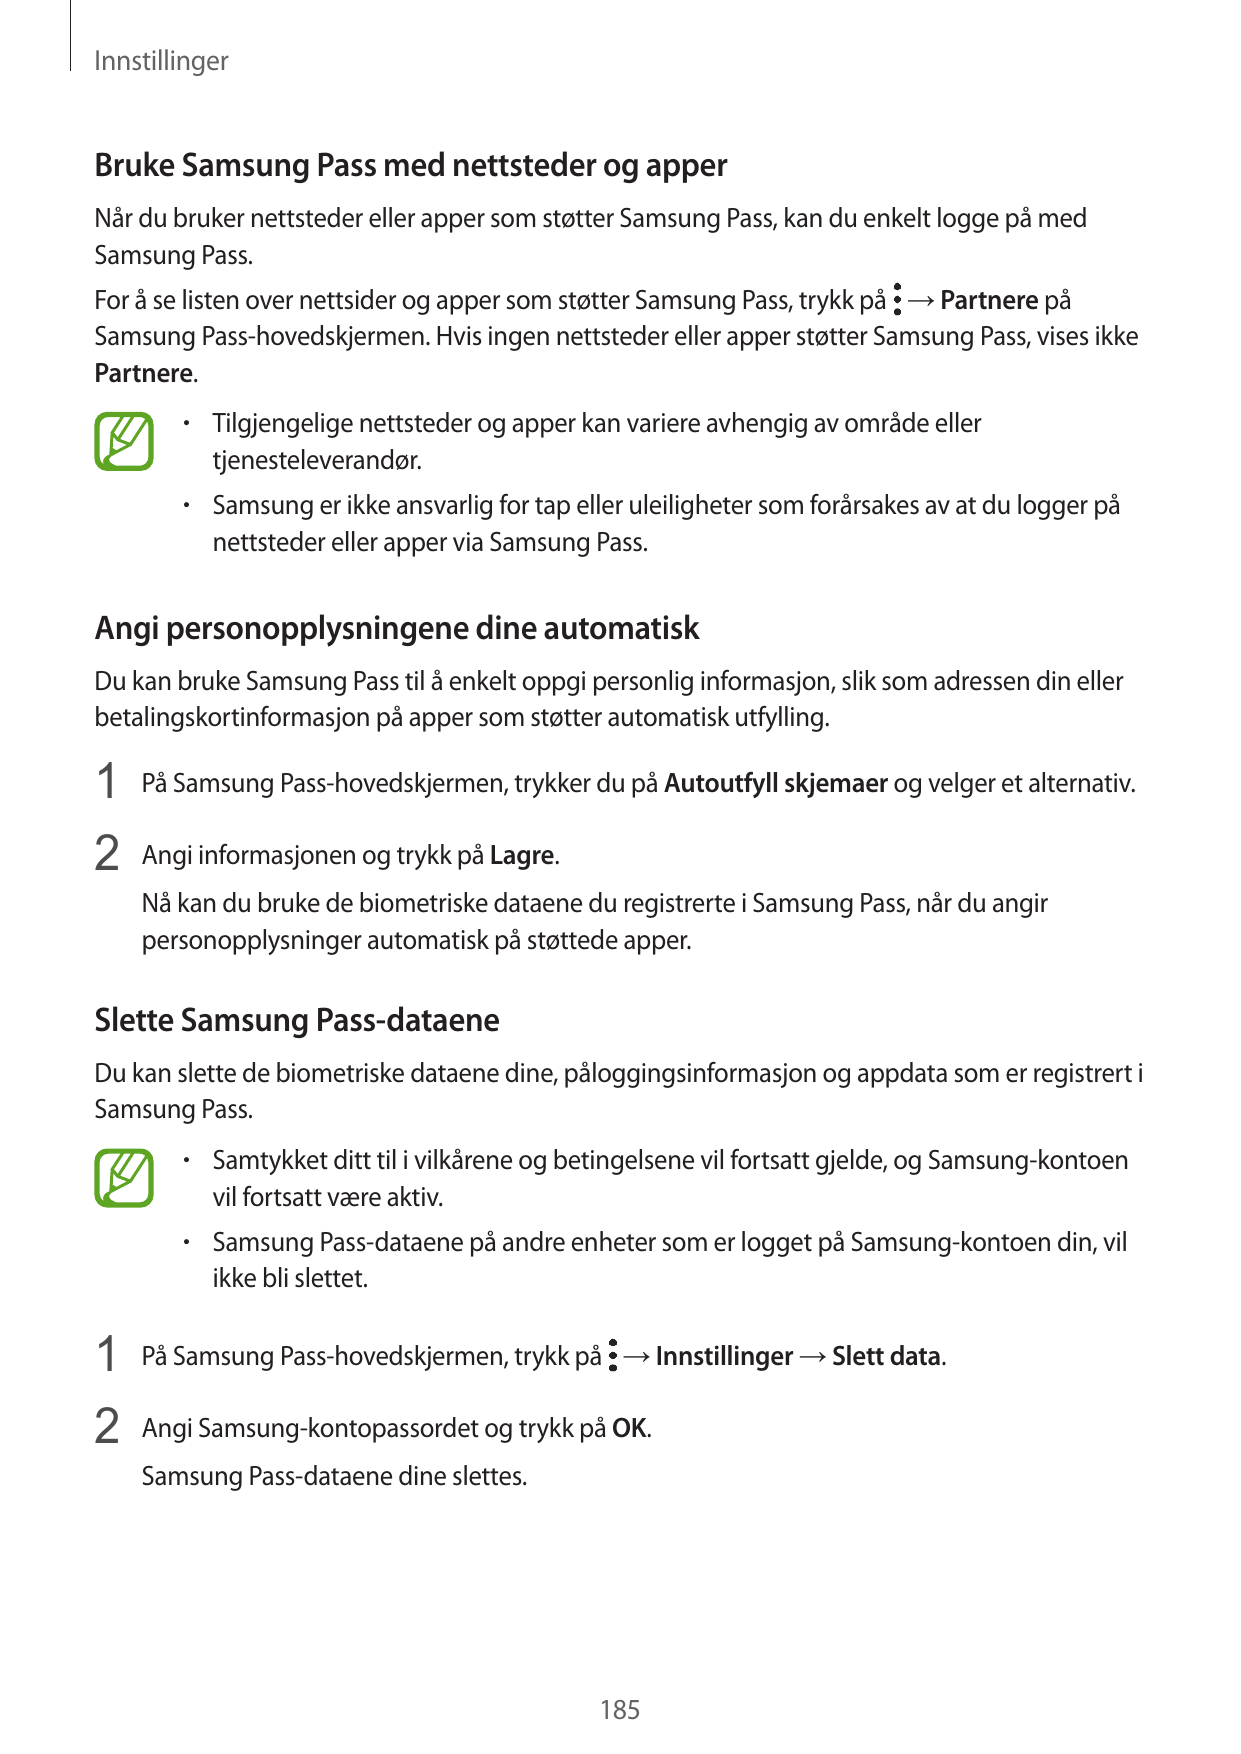 InnstillingerBruke Samsung Pass med nettsteder og apperNår du bruker nettsteder eller apper som støtter Samsung Pass, kan du enk